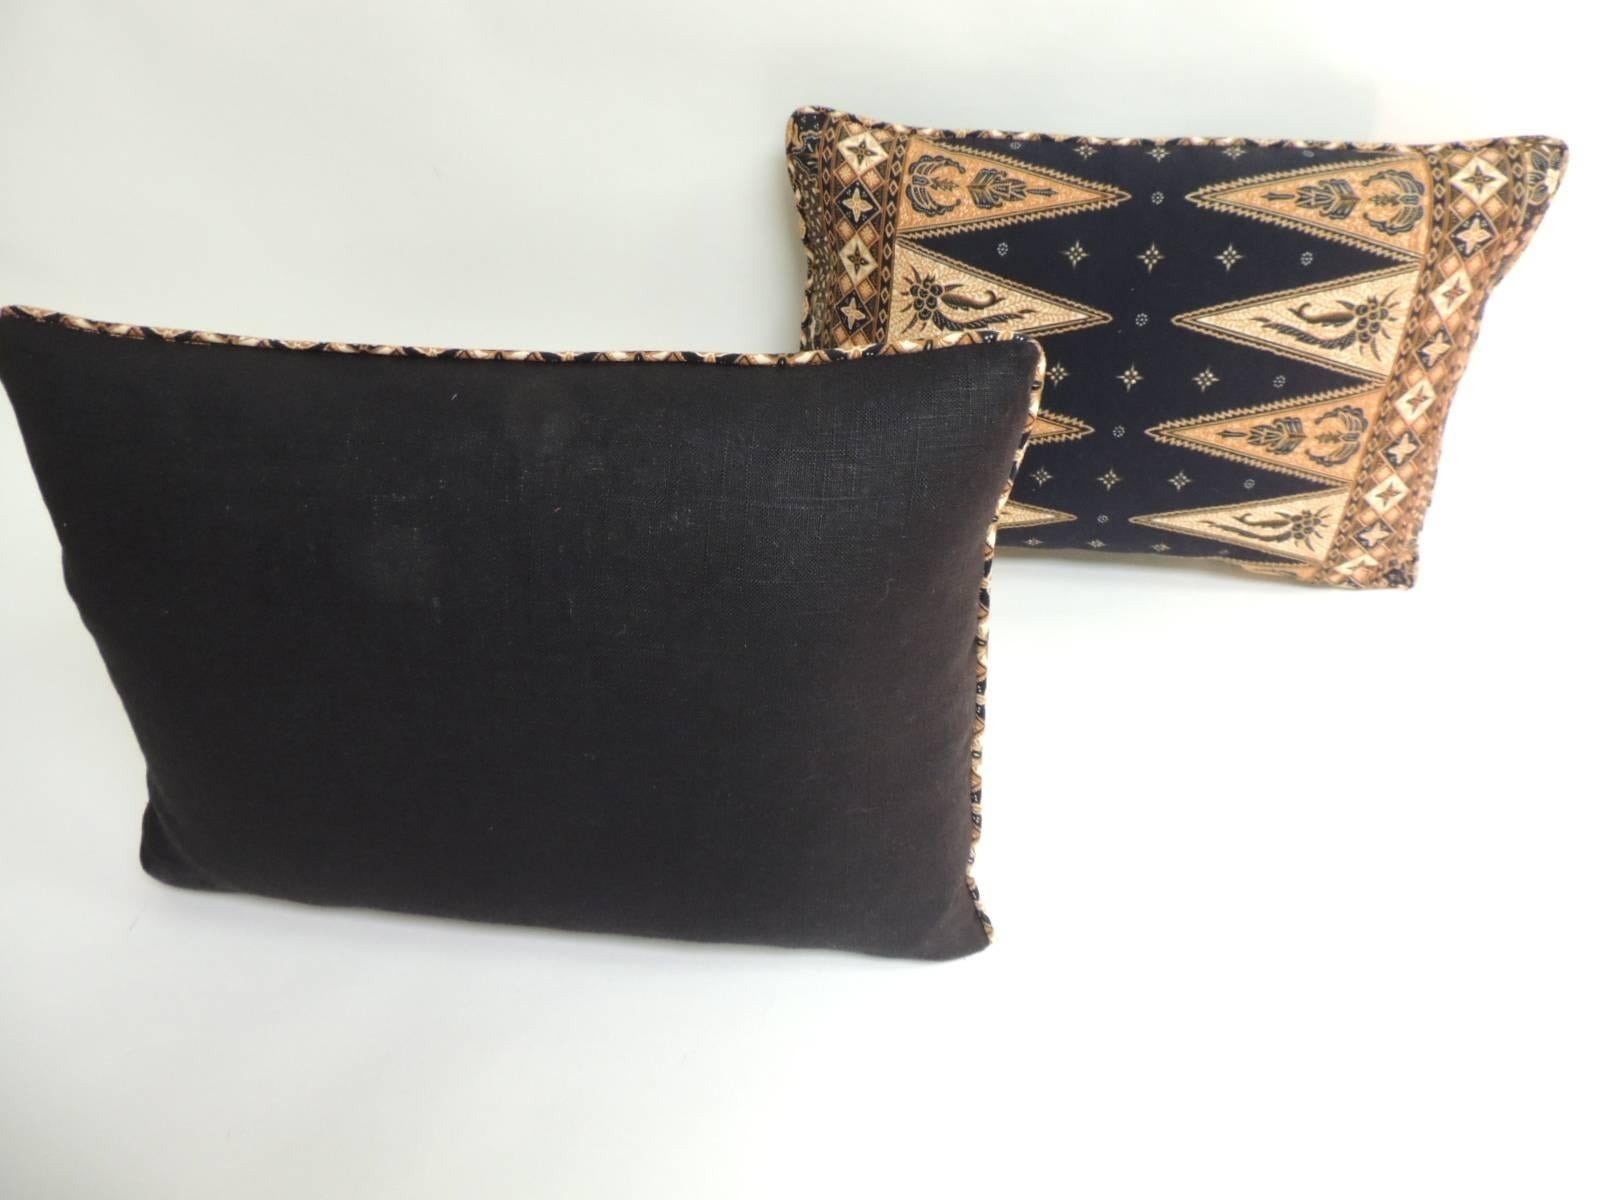 Indonesian Pair of Vintage Black and Gold Batik Lumbar Decorative Pillows